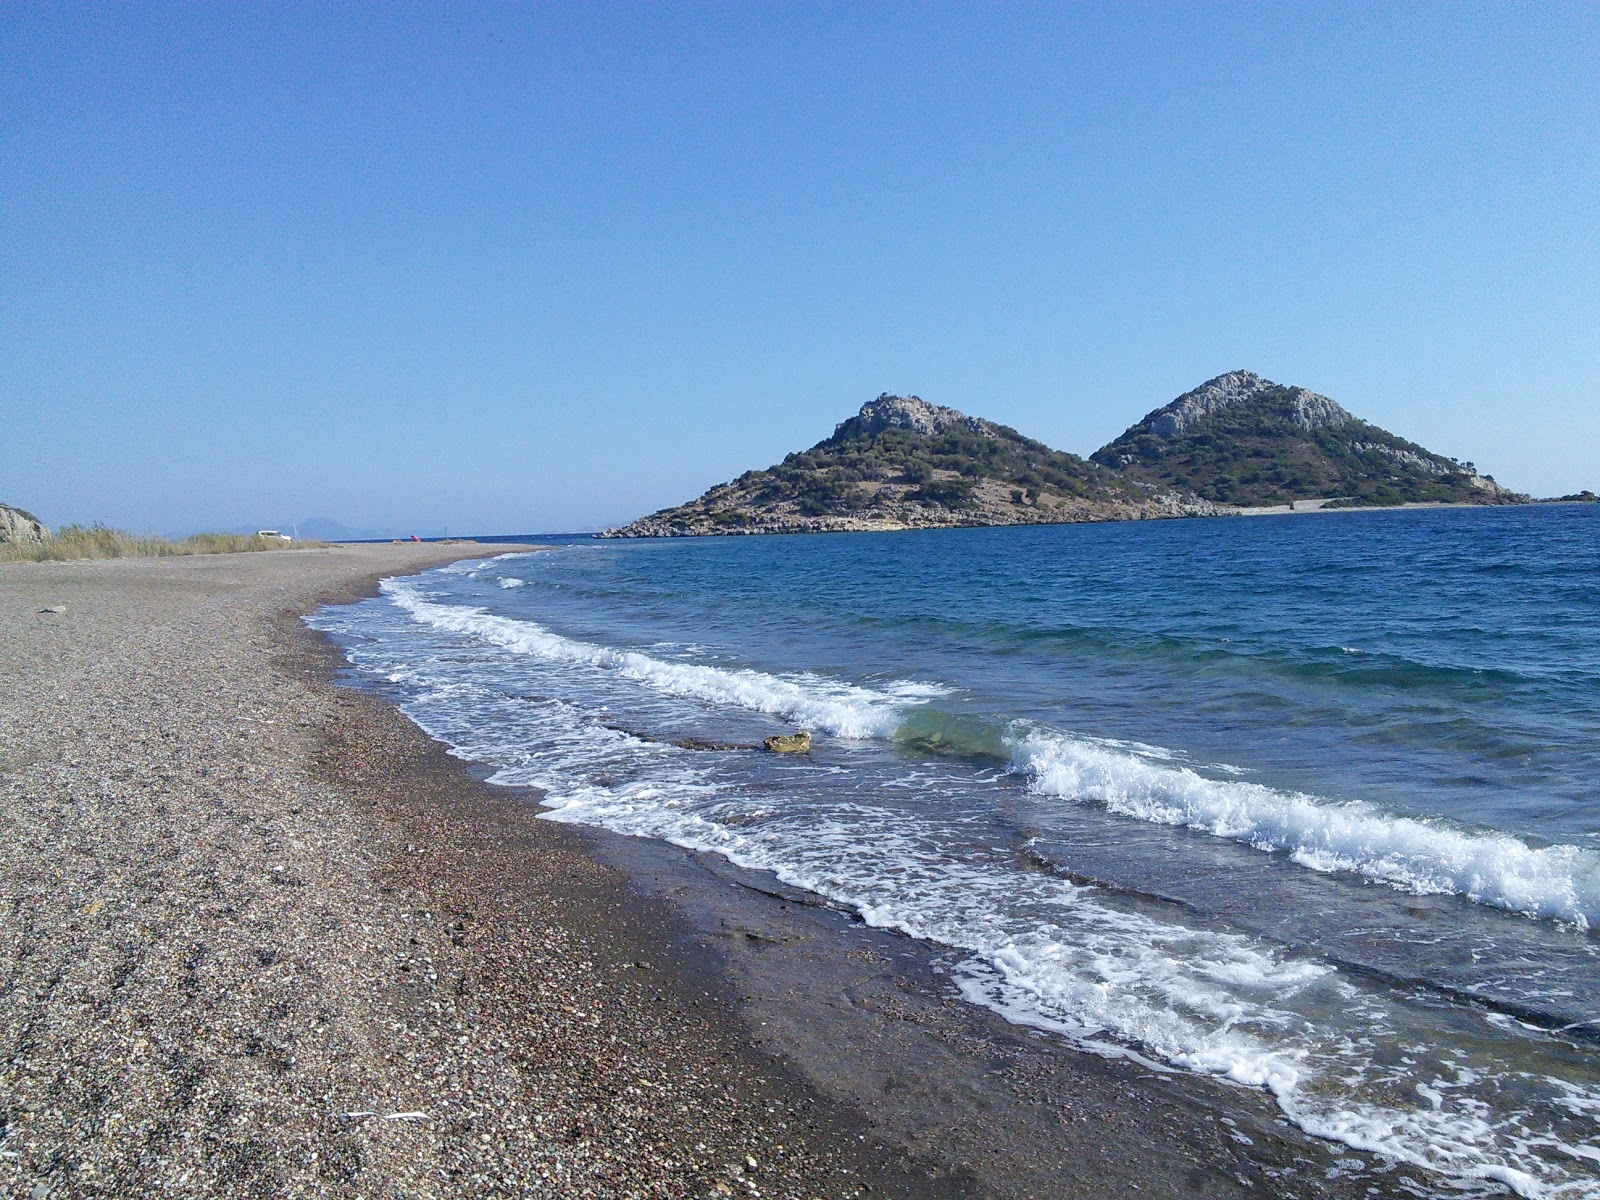 Perili beach II'in fotoğrafı gri ince çakıl taş yüzey ile